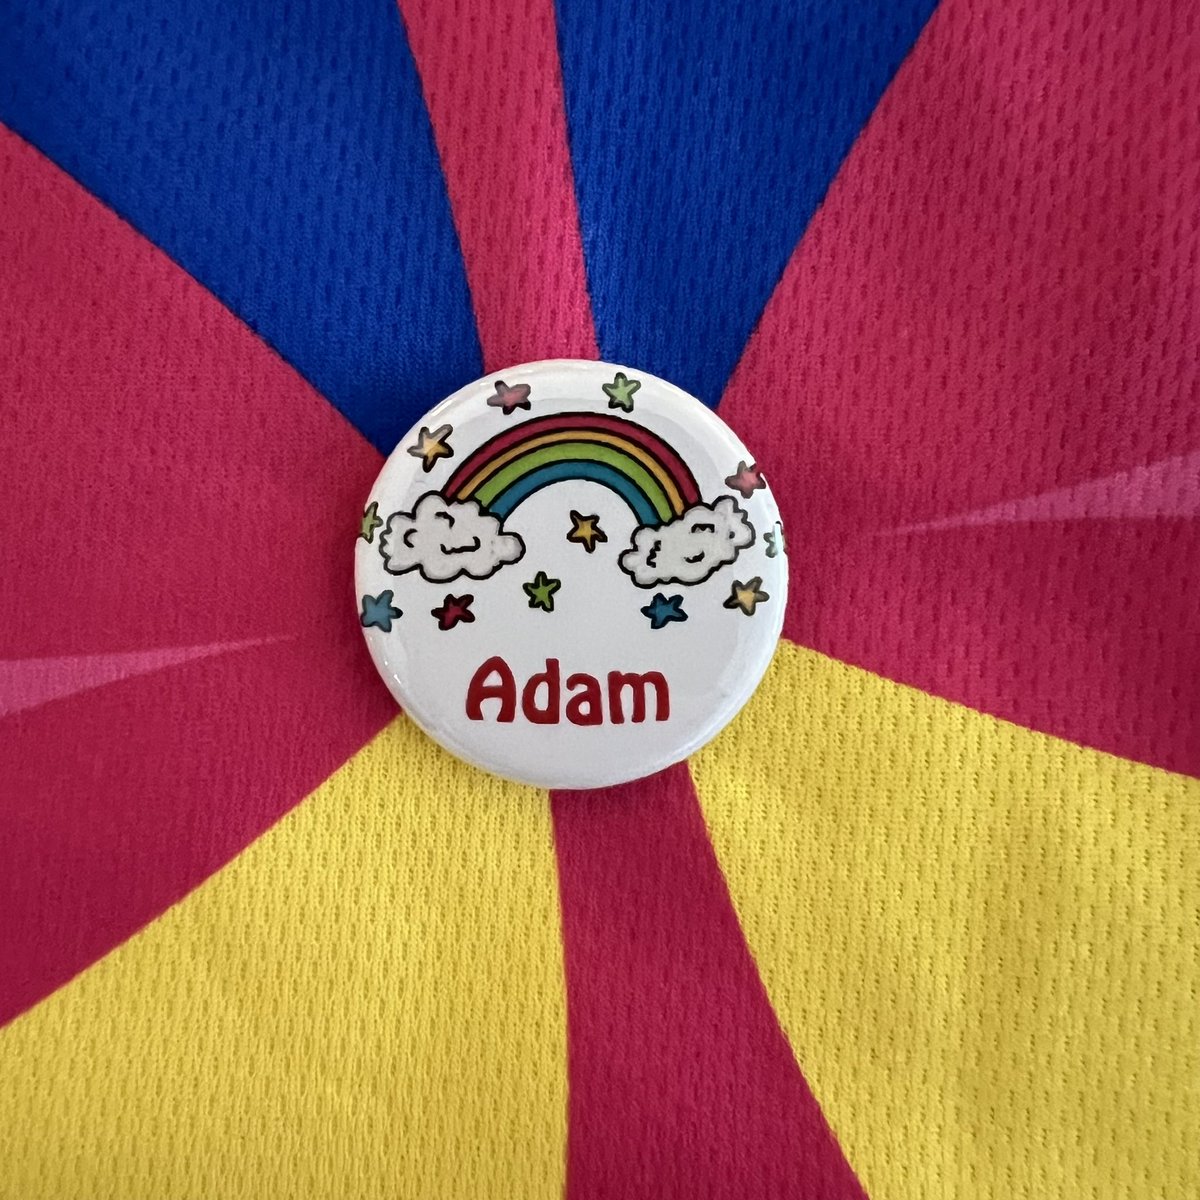 Adam

❤️

Forever 9

#neuroblastoma
#childhoodcancer